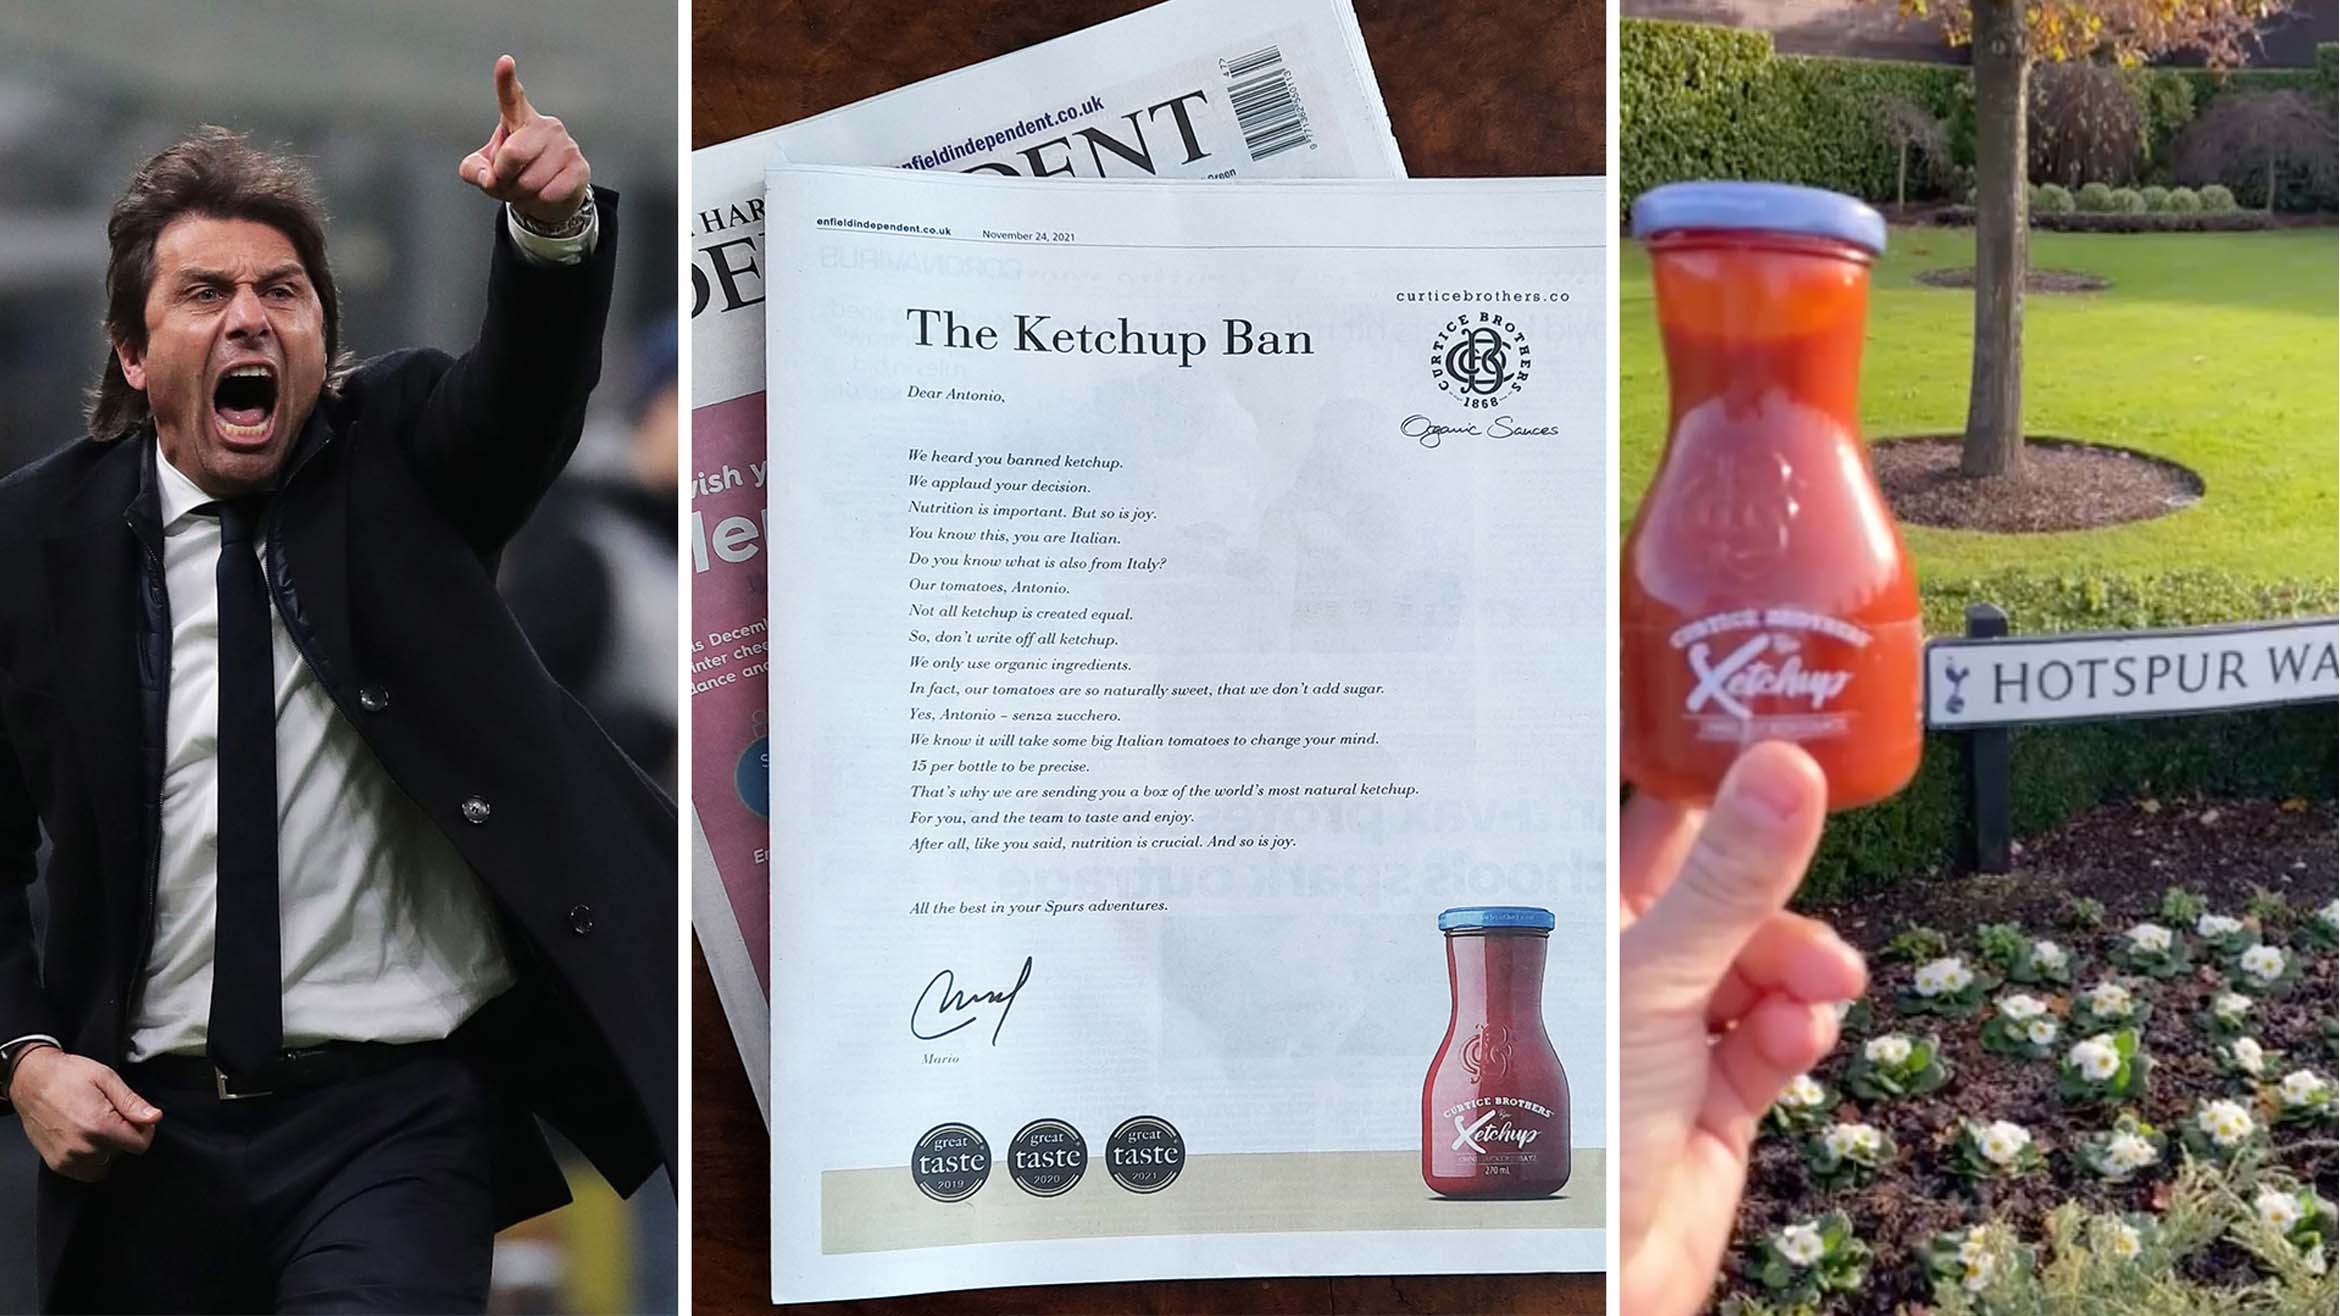 Antonio Conte wettert ob der schlechten Verfassung seiner Spieler, Curtice Brothers schickt daraufhin einen offenen Brief und ein Paket mit Ketchup –